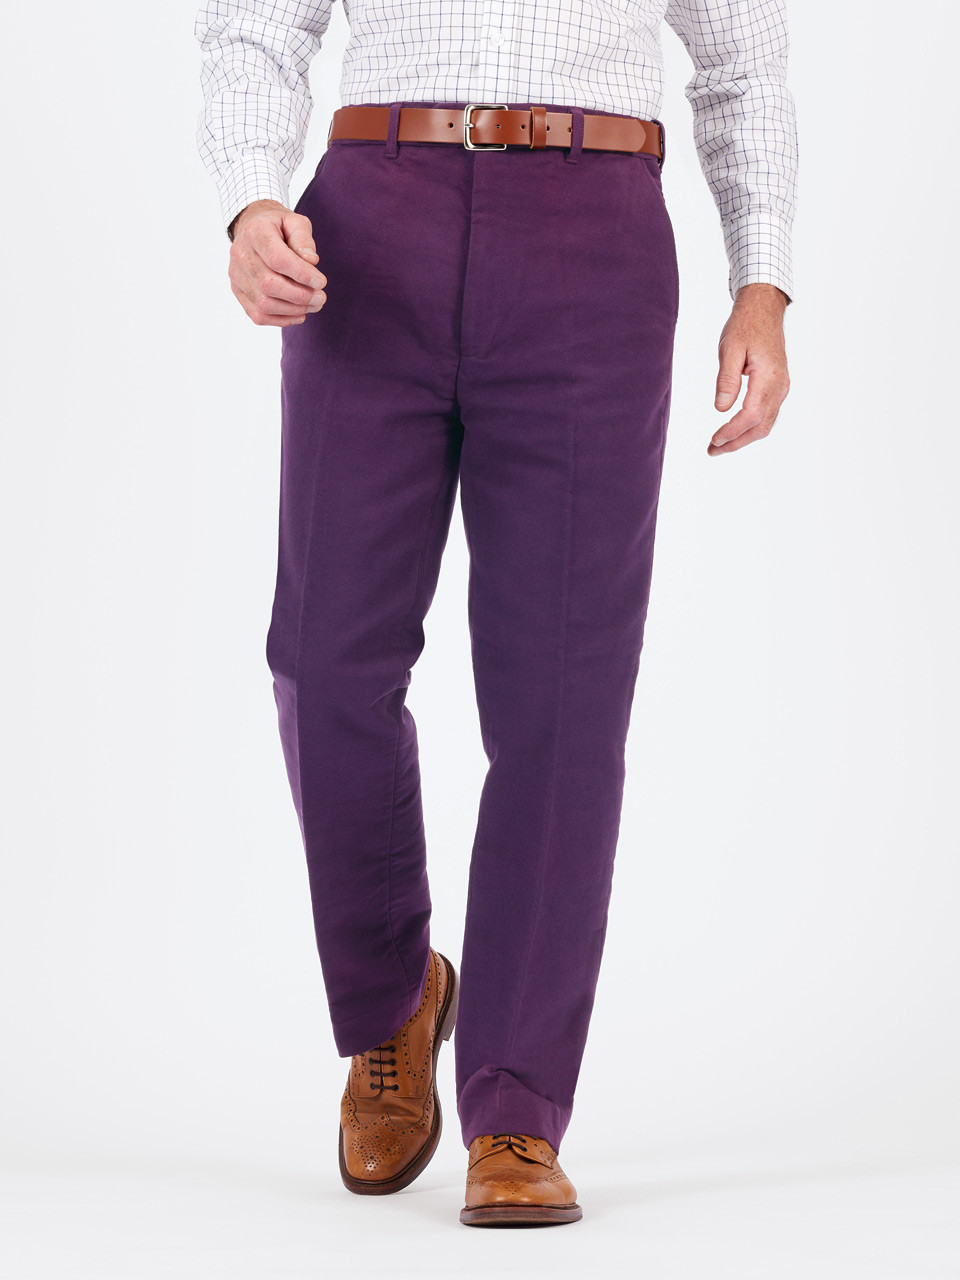 Purple Men's Pants / Jeans